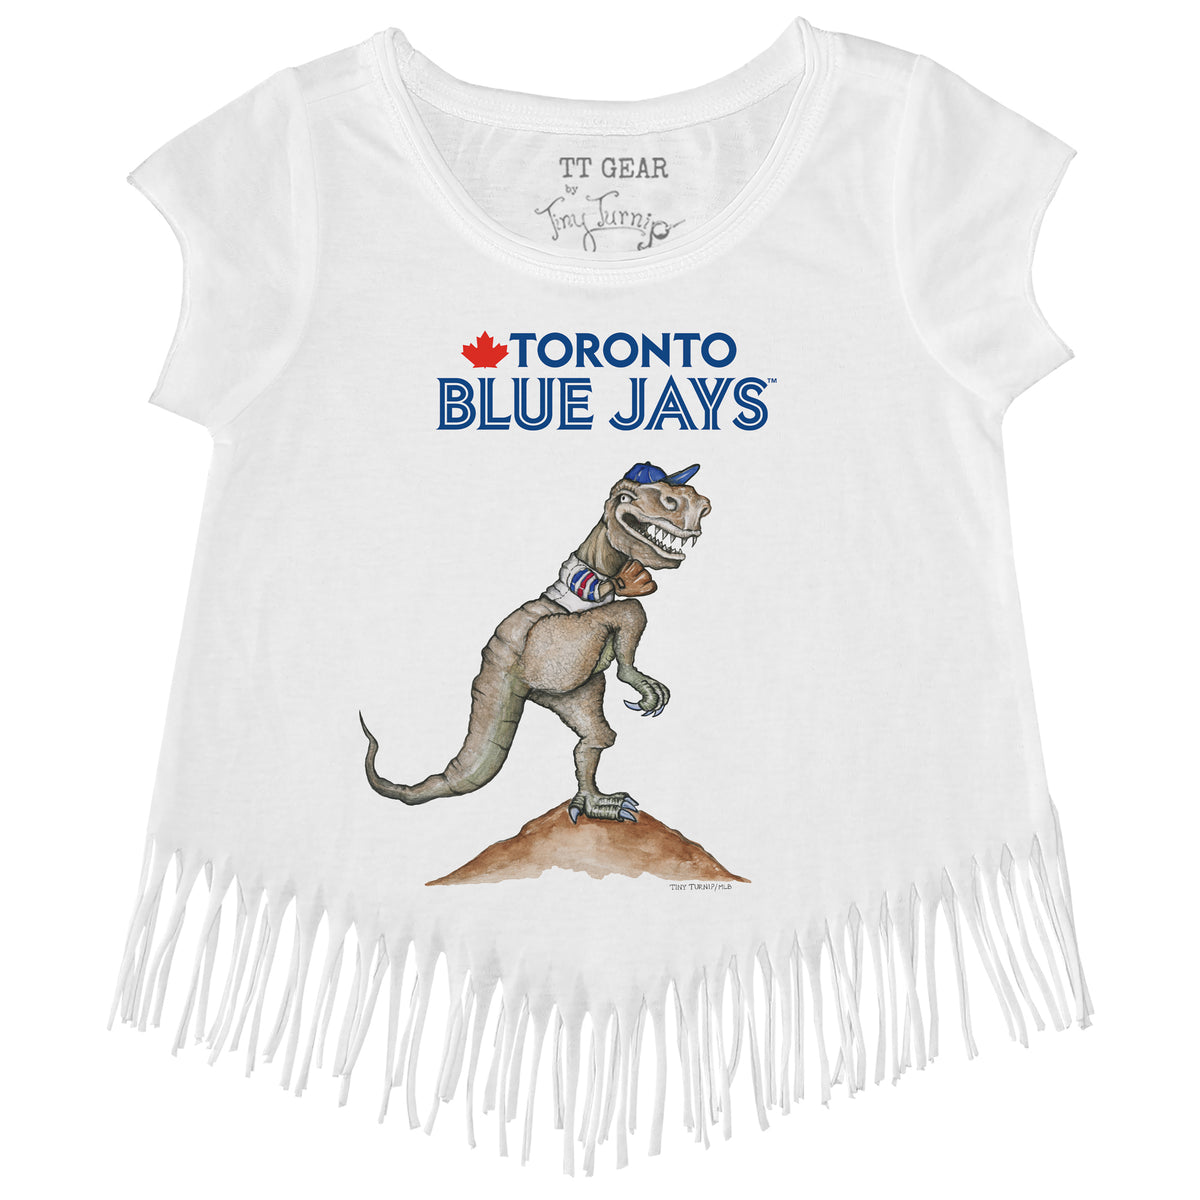 Girls Youth Tiny Turnip Royal Toronto Blue Jays Triple Scoop Fringe T-Shirt Size: Small